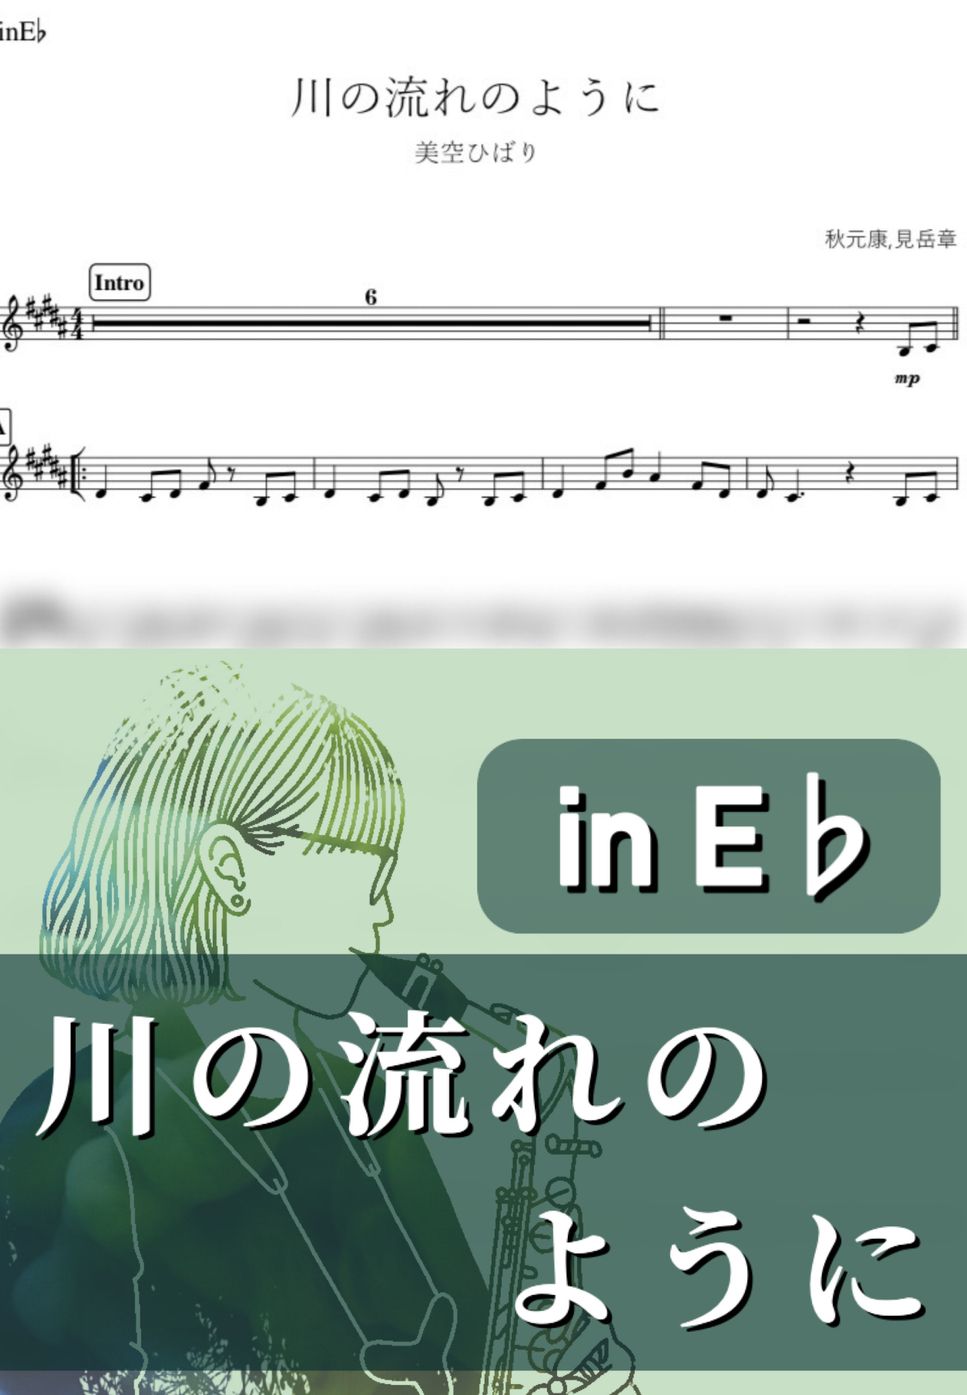 美空ひばり - 川の流れのように (E♭) by kanamusic